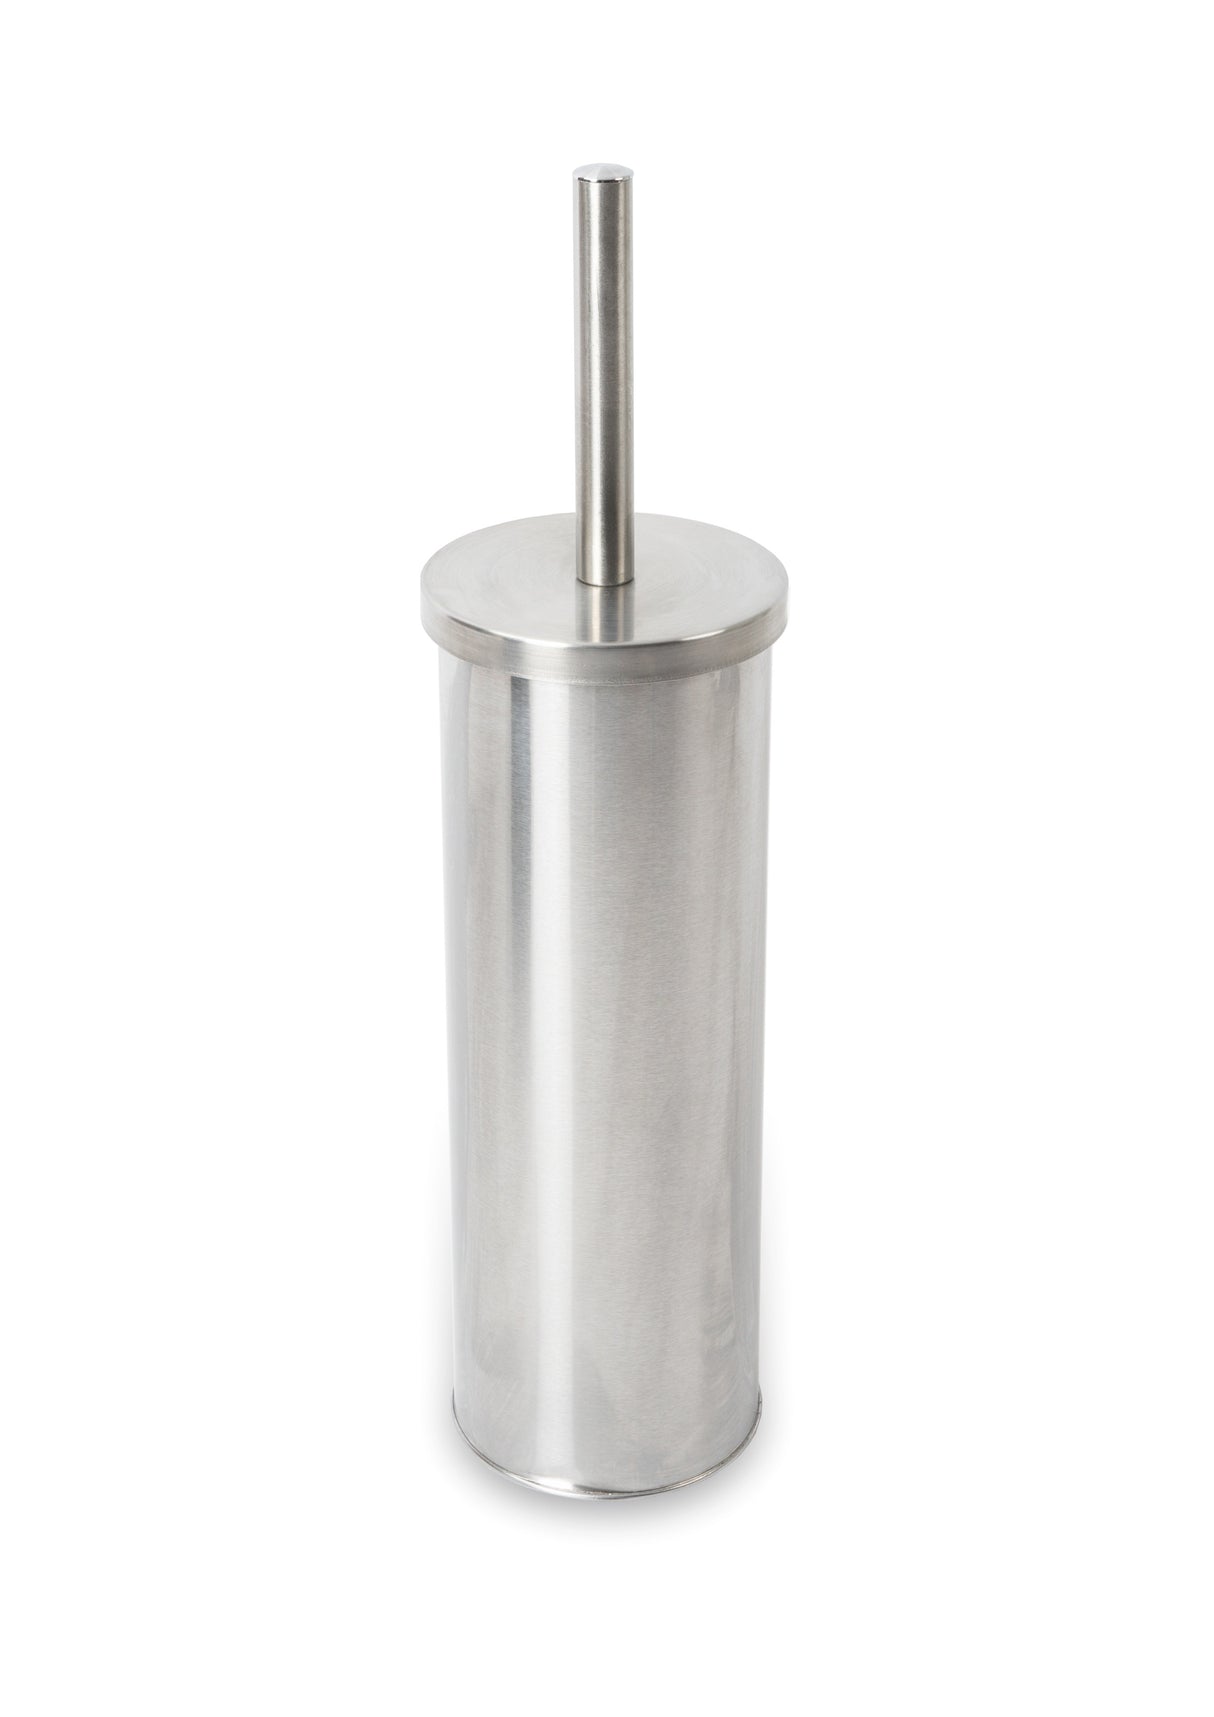 Blizz toilet brush holder in satin finish stainless steel